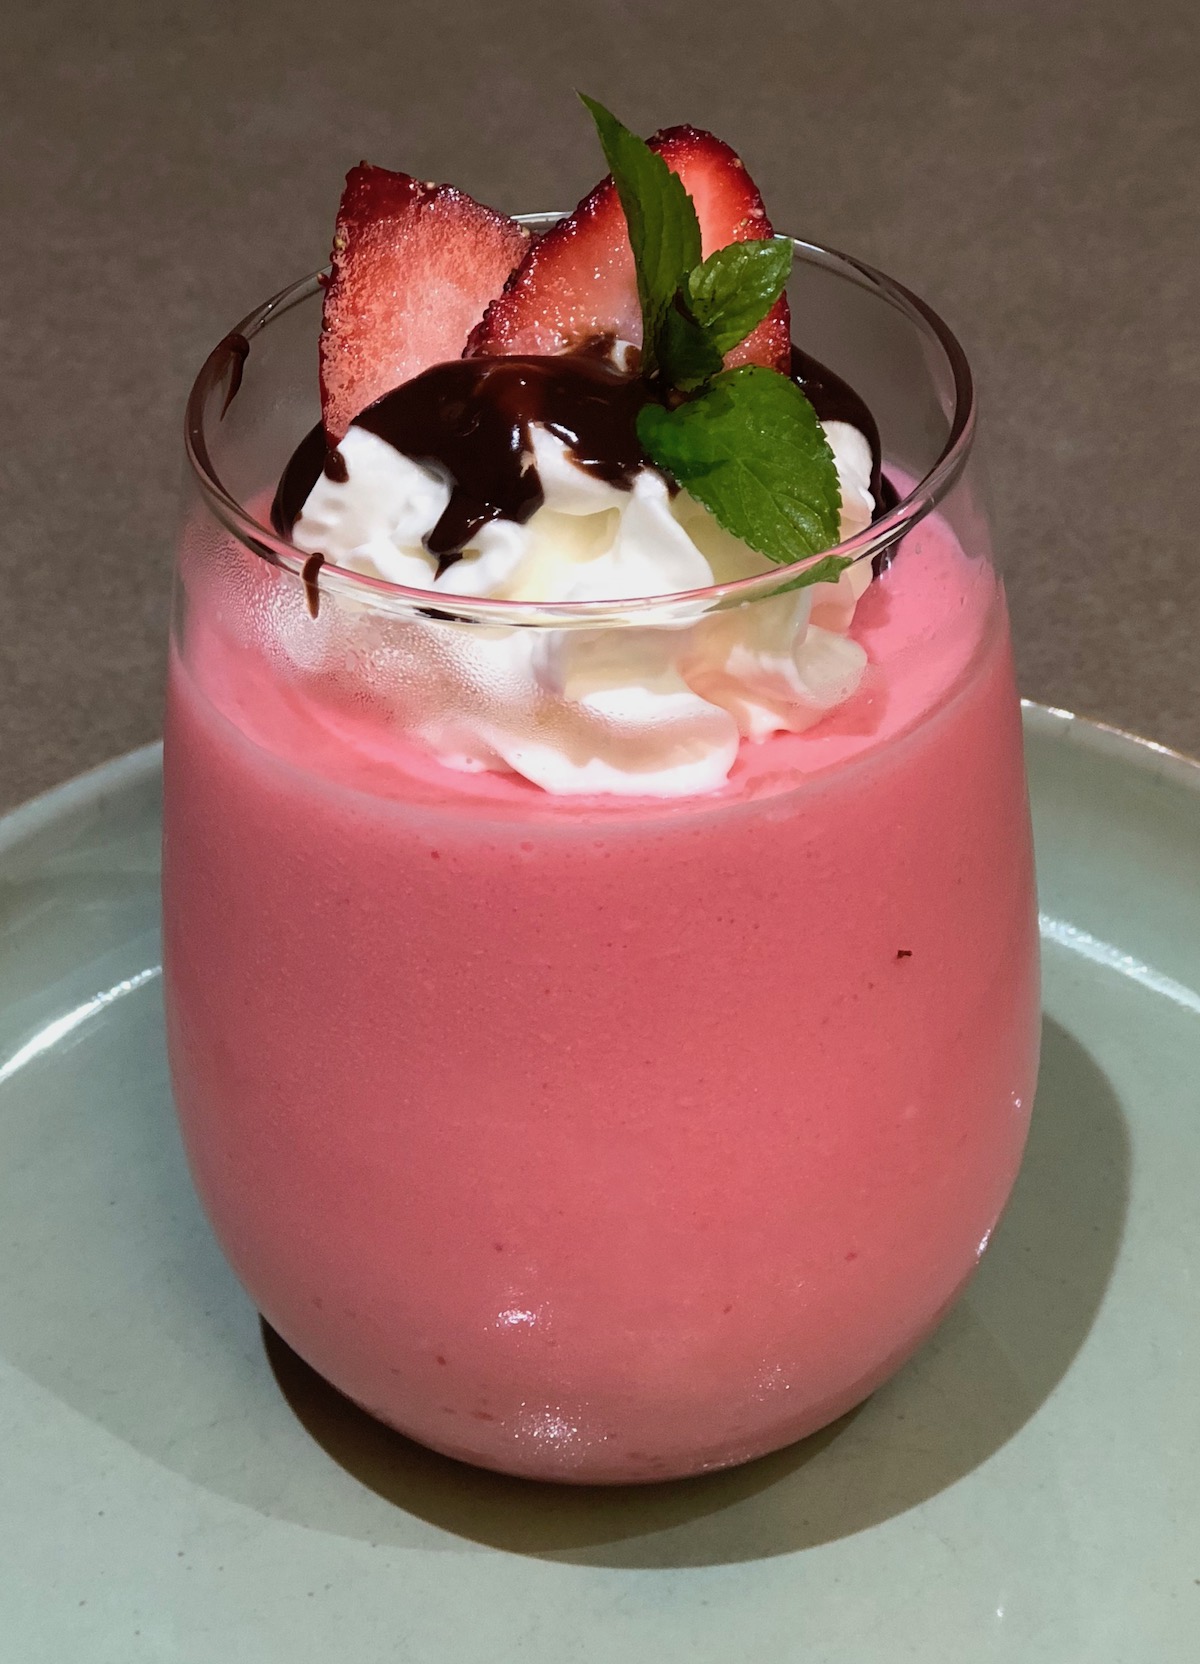 Berry Yogurt Tapioca Gelatin with Strawberries and Chocolate Sauce